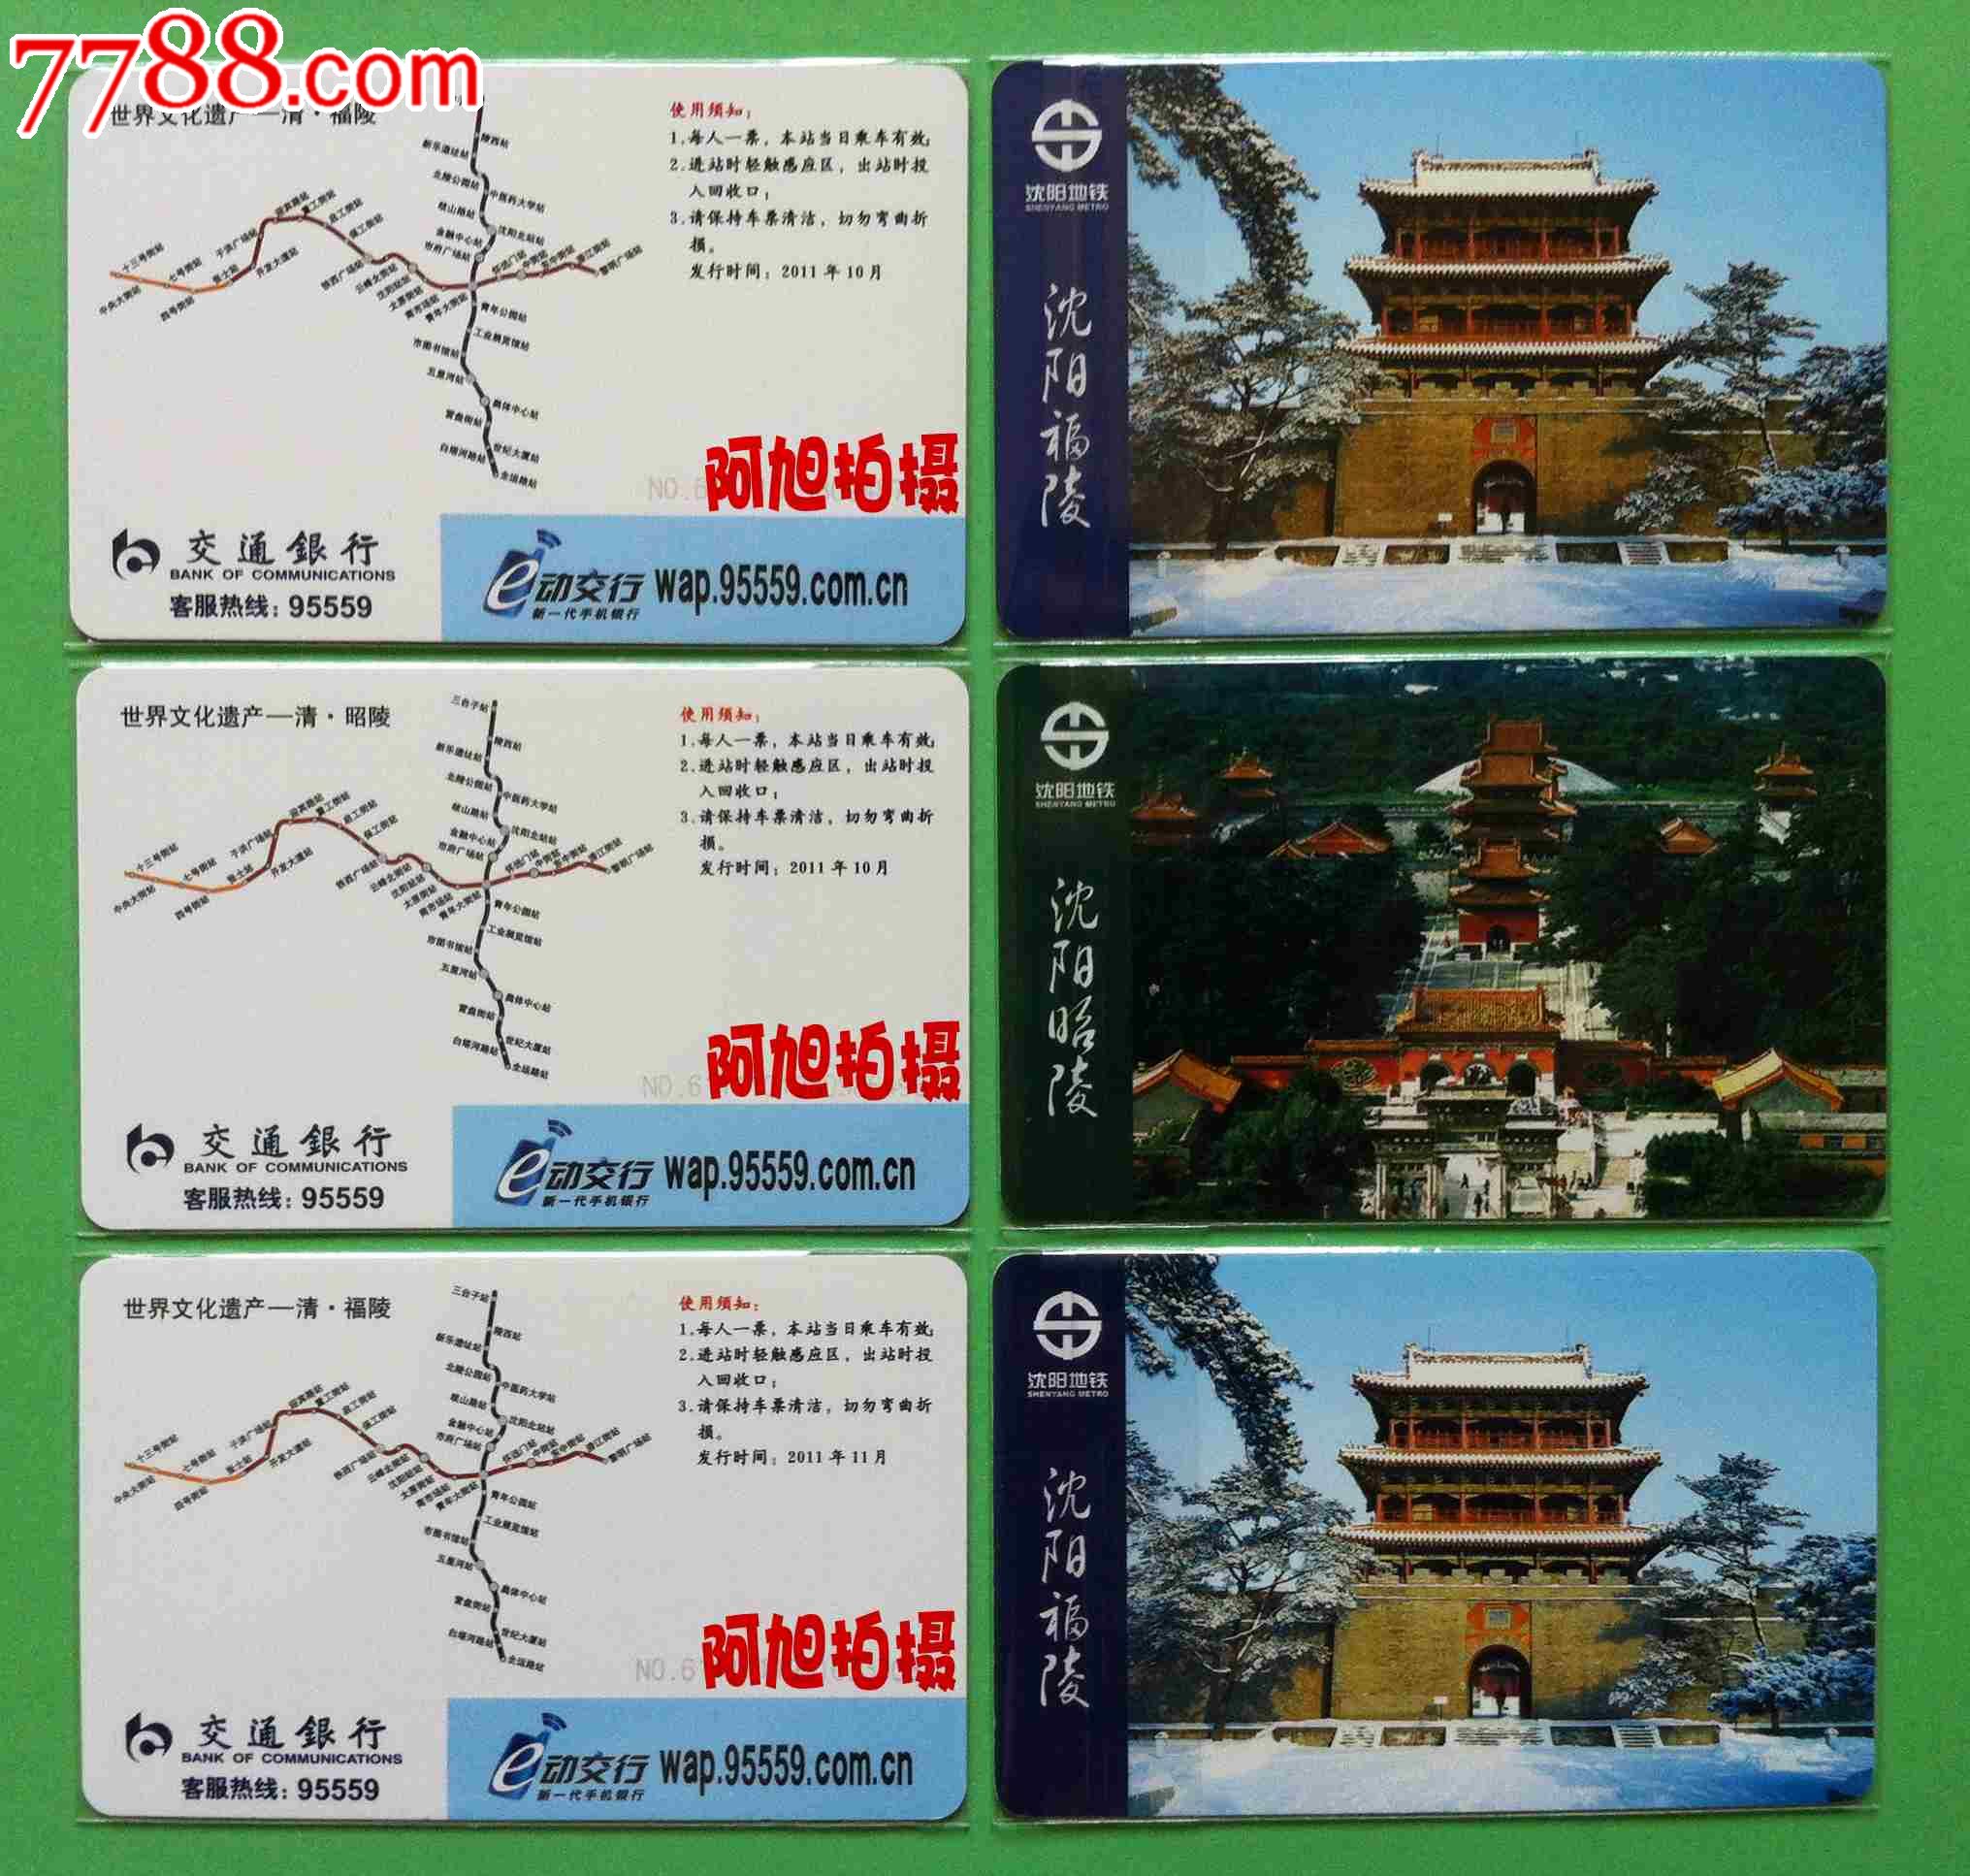 沈阳地铁单程票图片